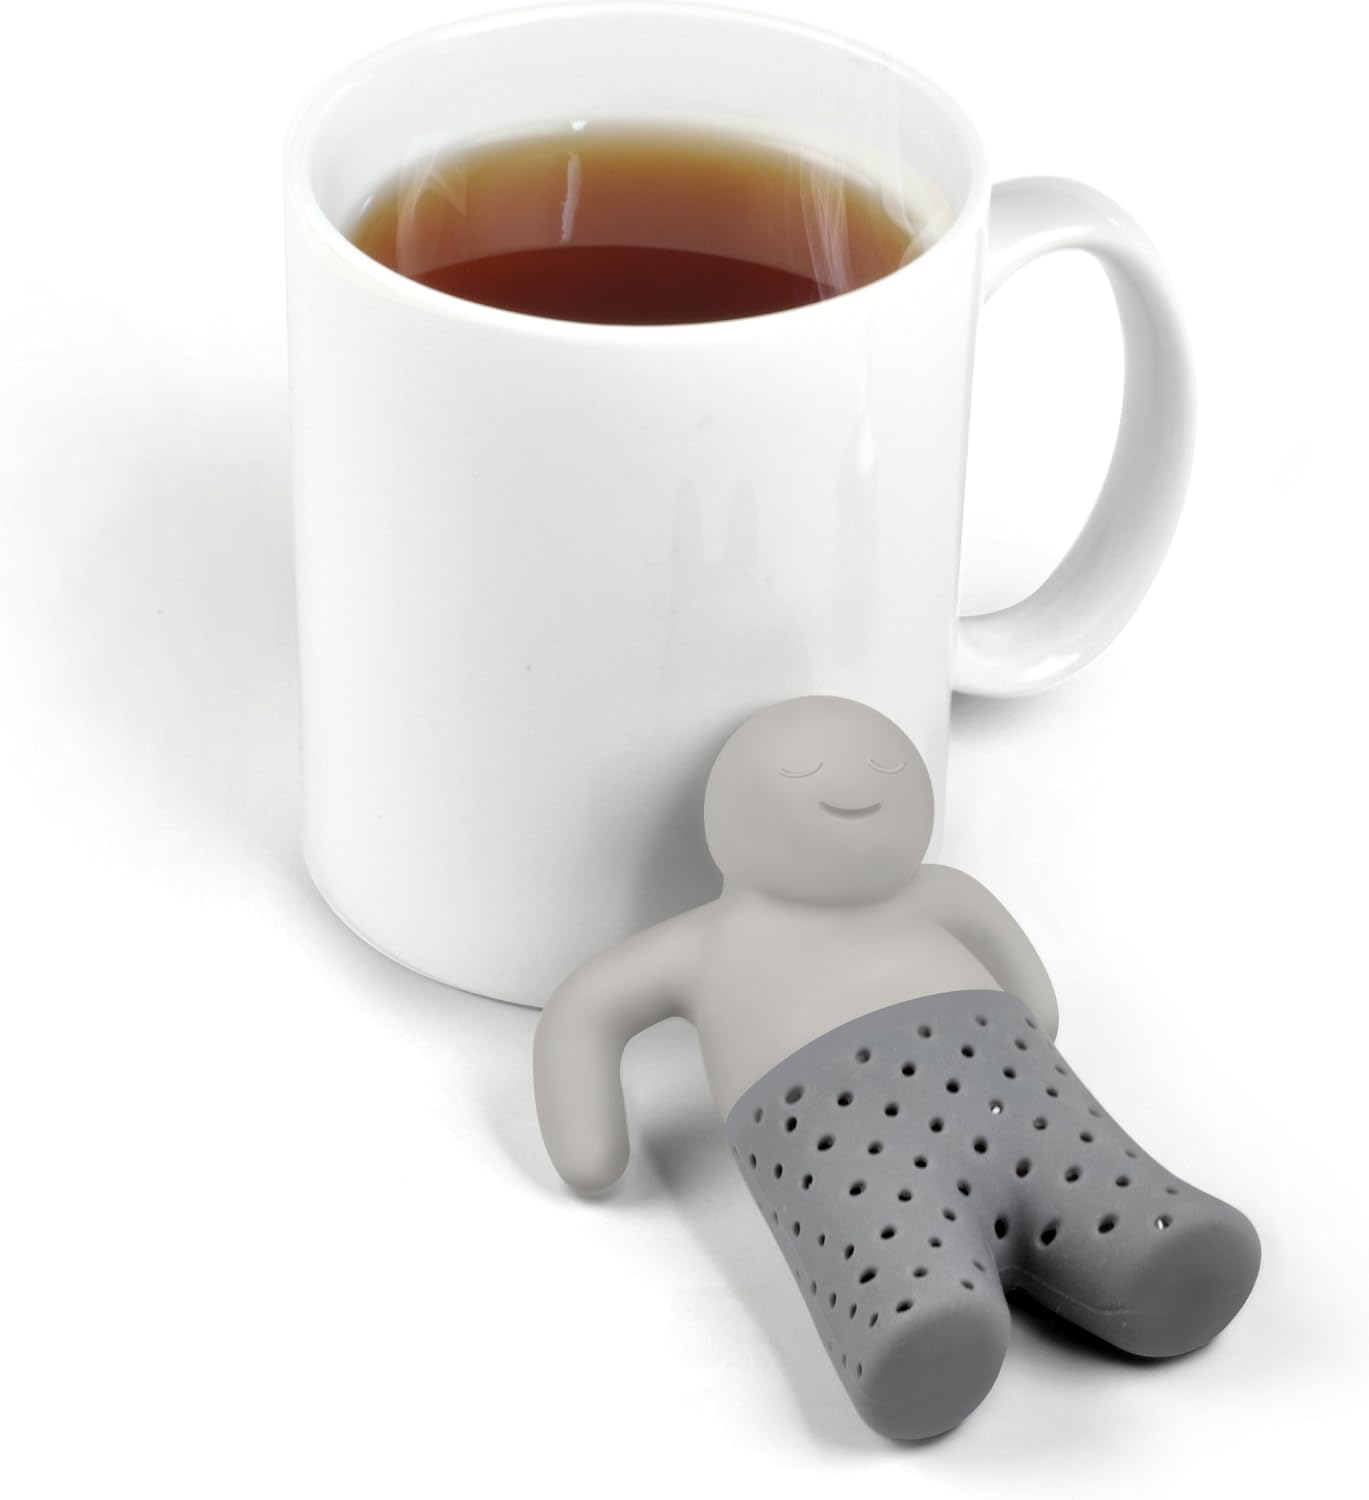 Mr Tea Tea Infuser